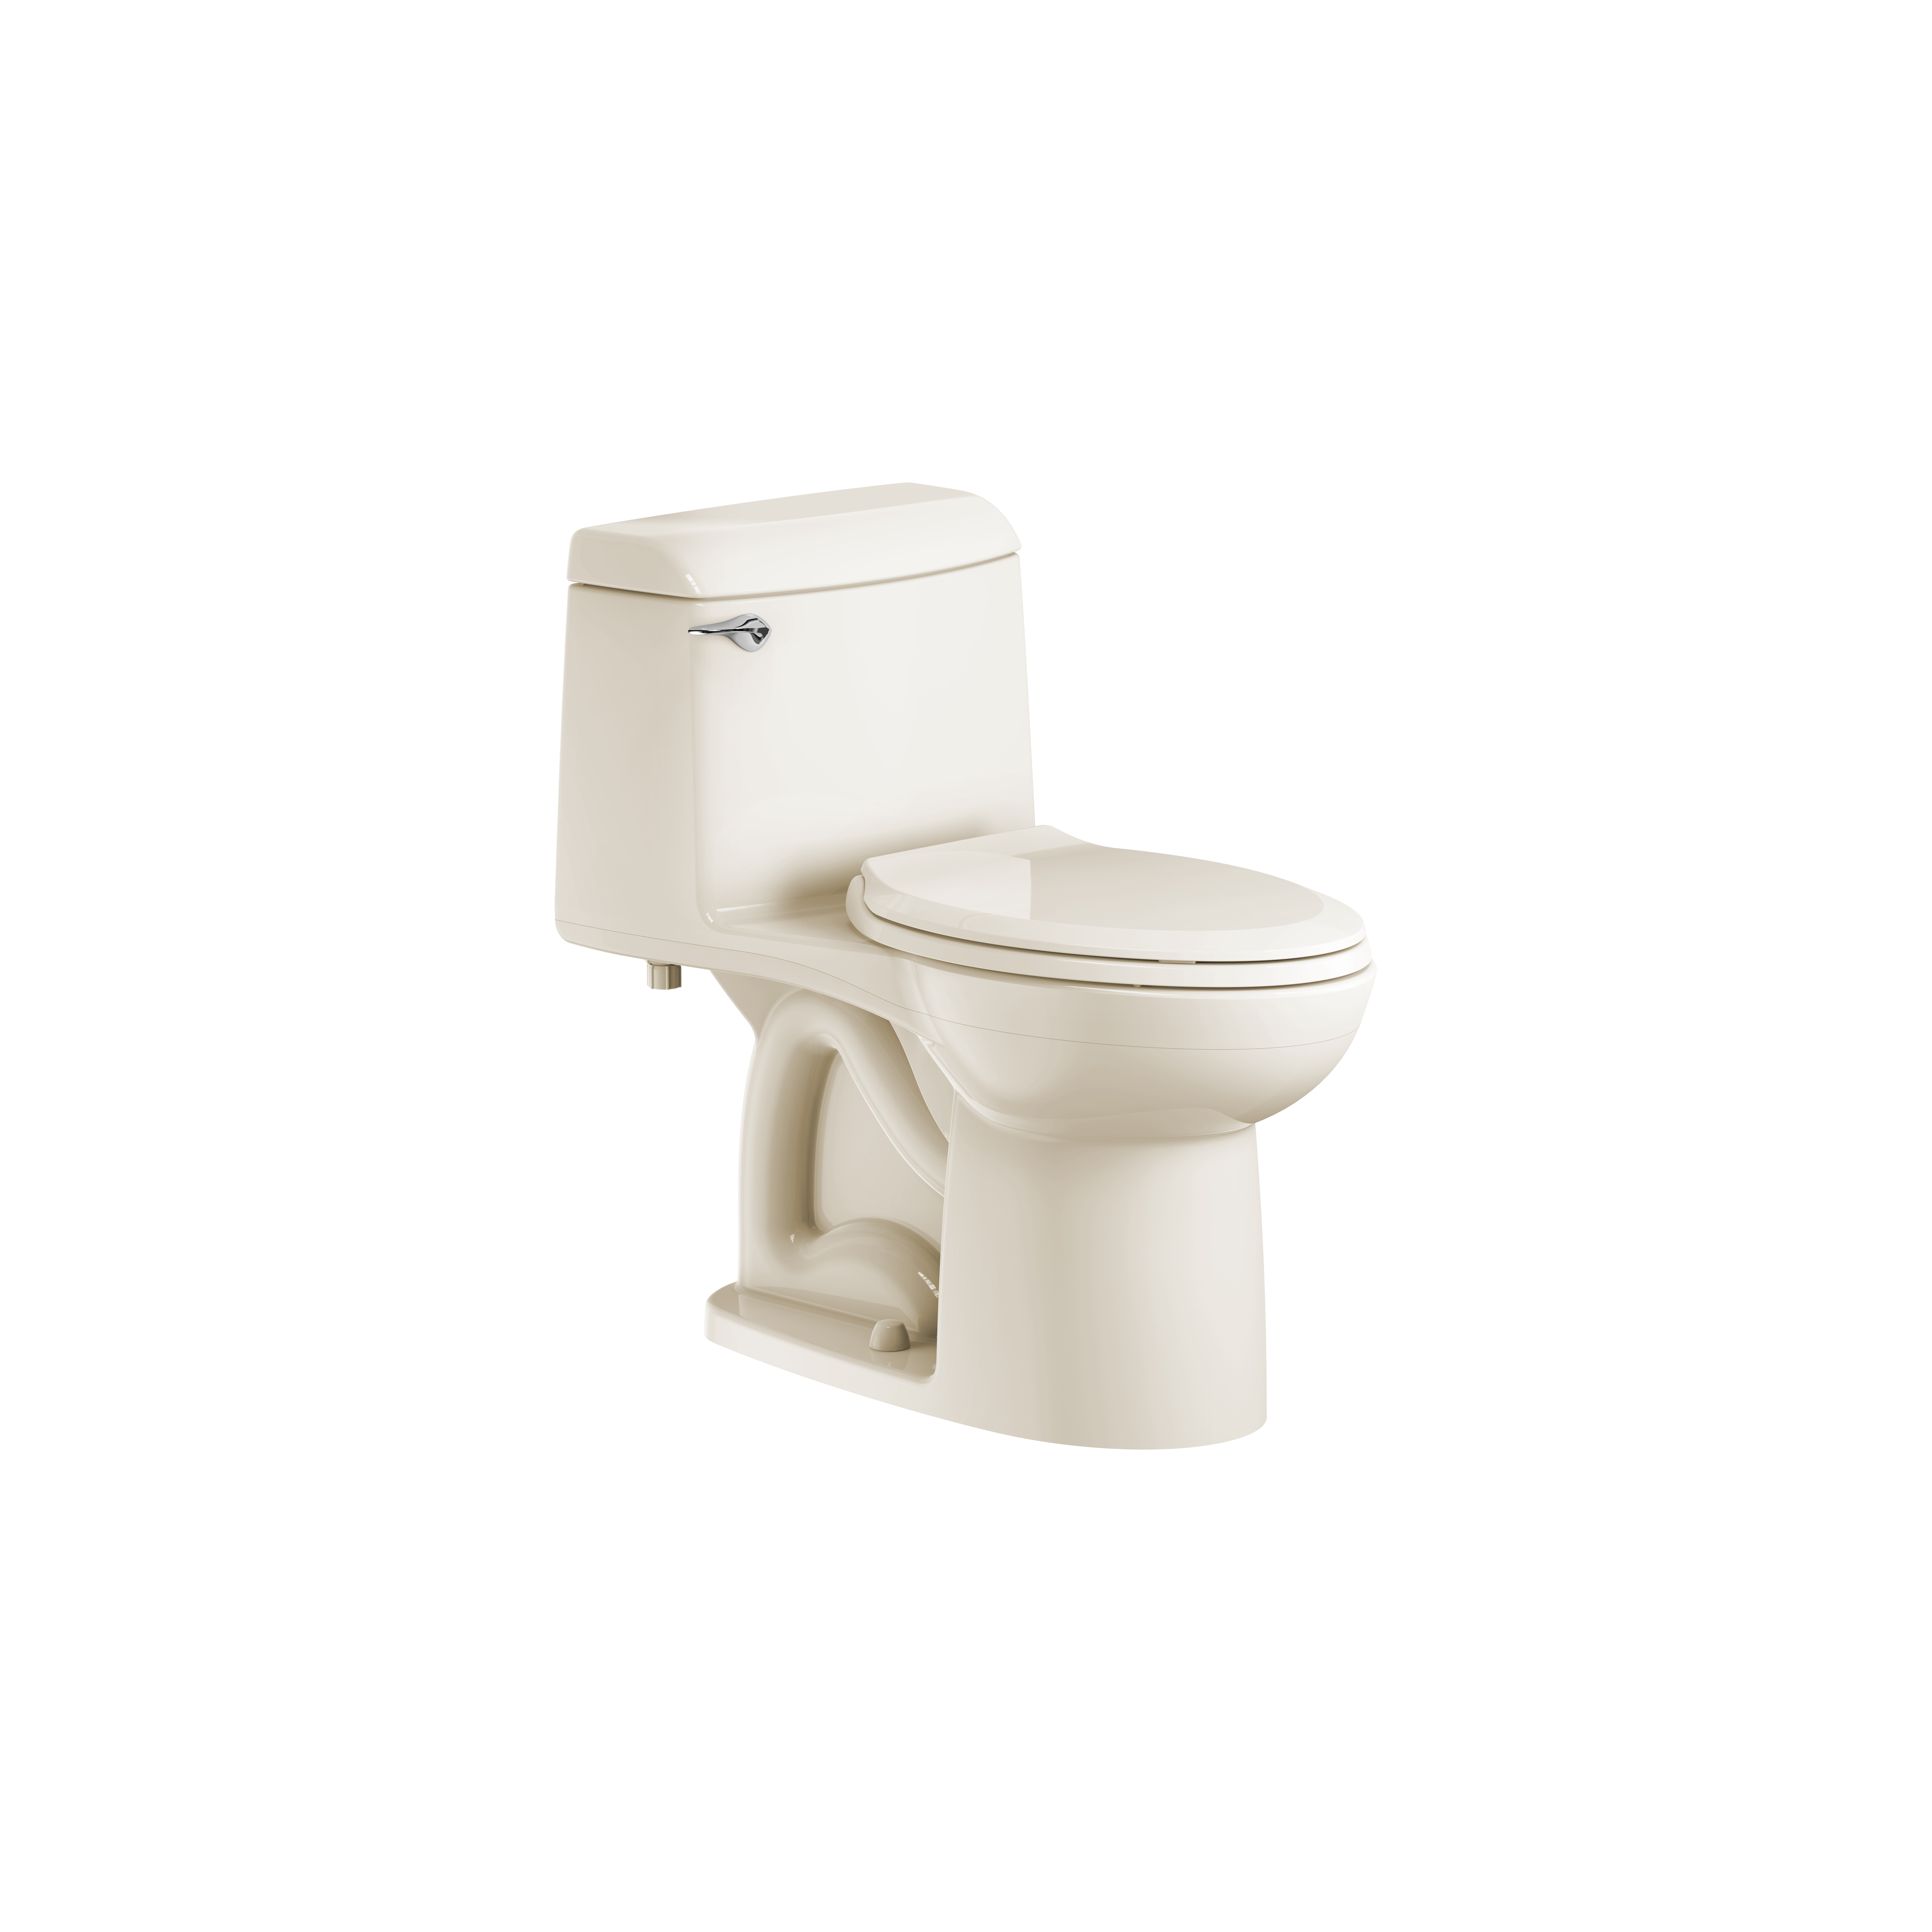 Toilette monopièce Champion 4, 1,6 gpc/6,0 lpc, à cuvette allongée à hauteur de chaise avec siège